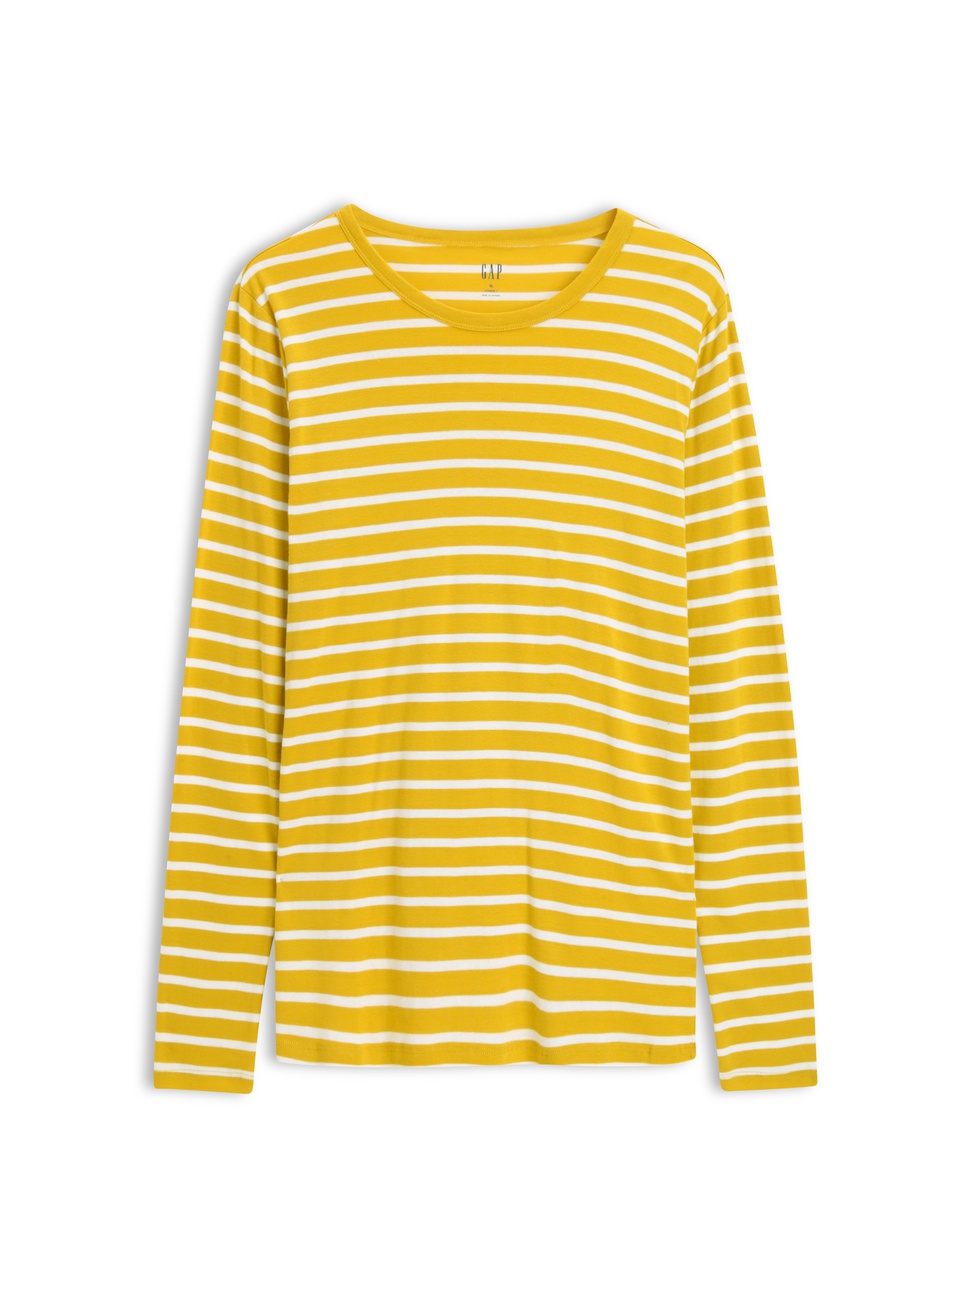 女裝|舒適條紋設計圓領長袖T恤-檸檬黃